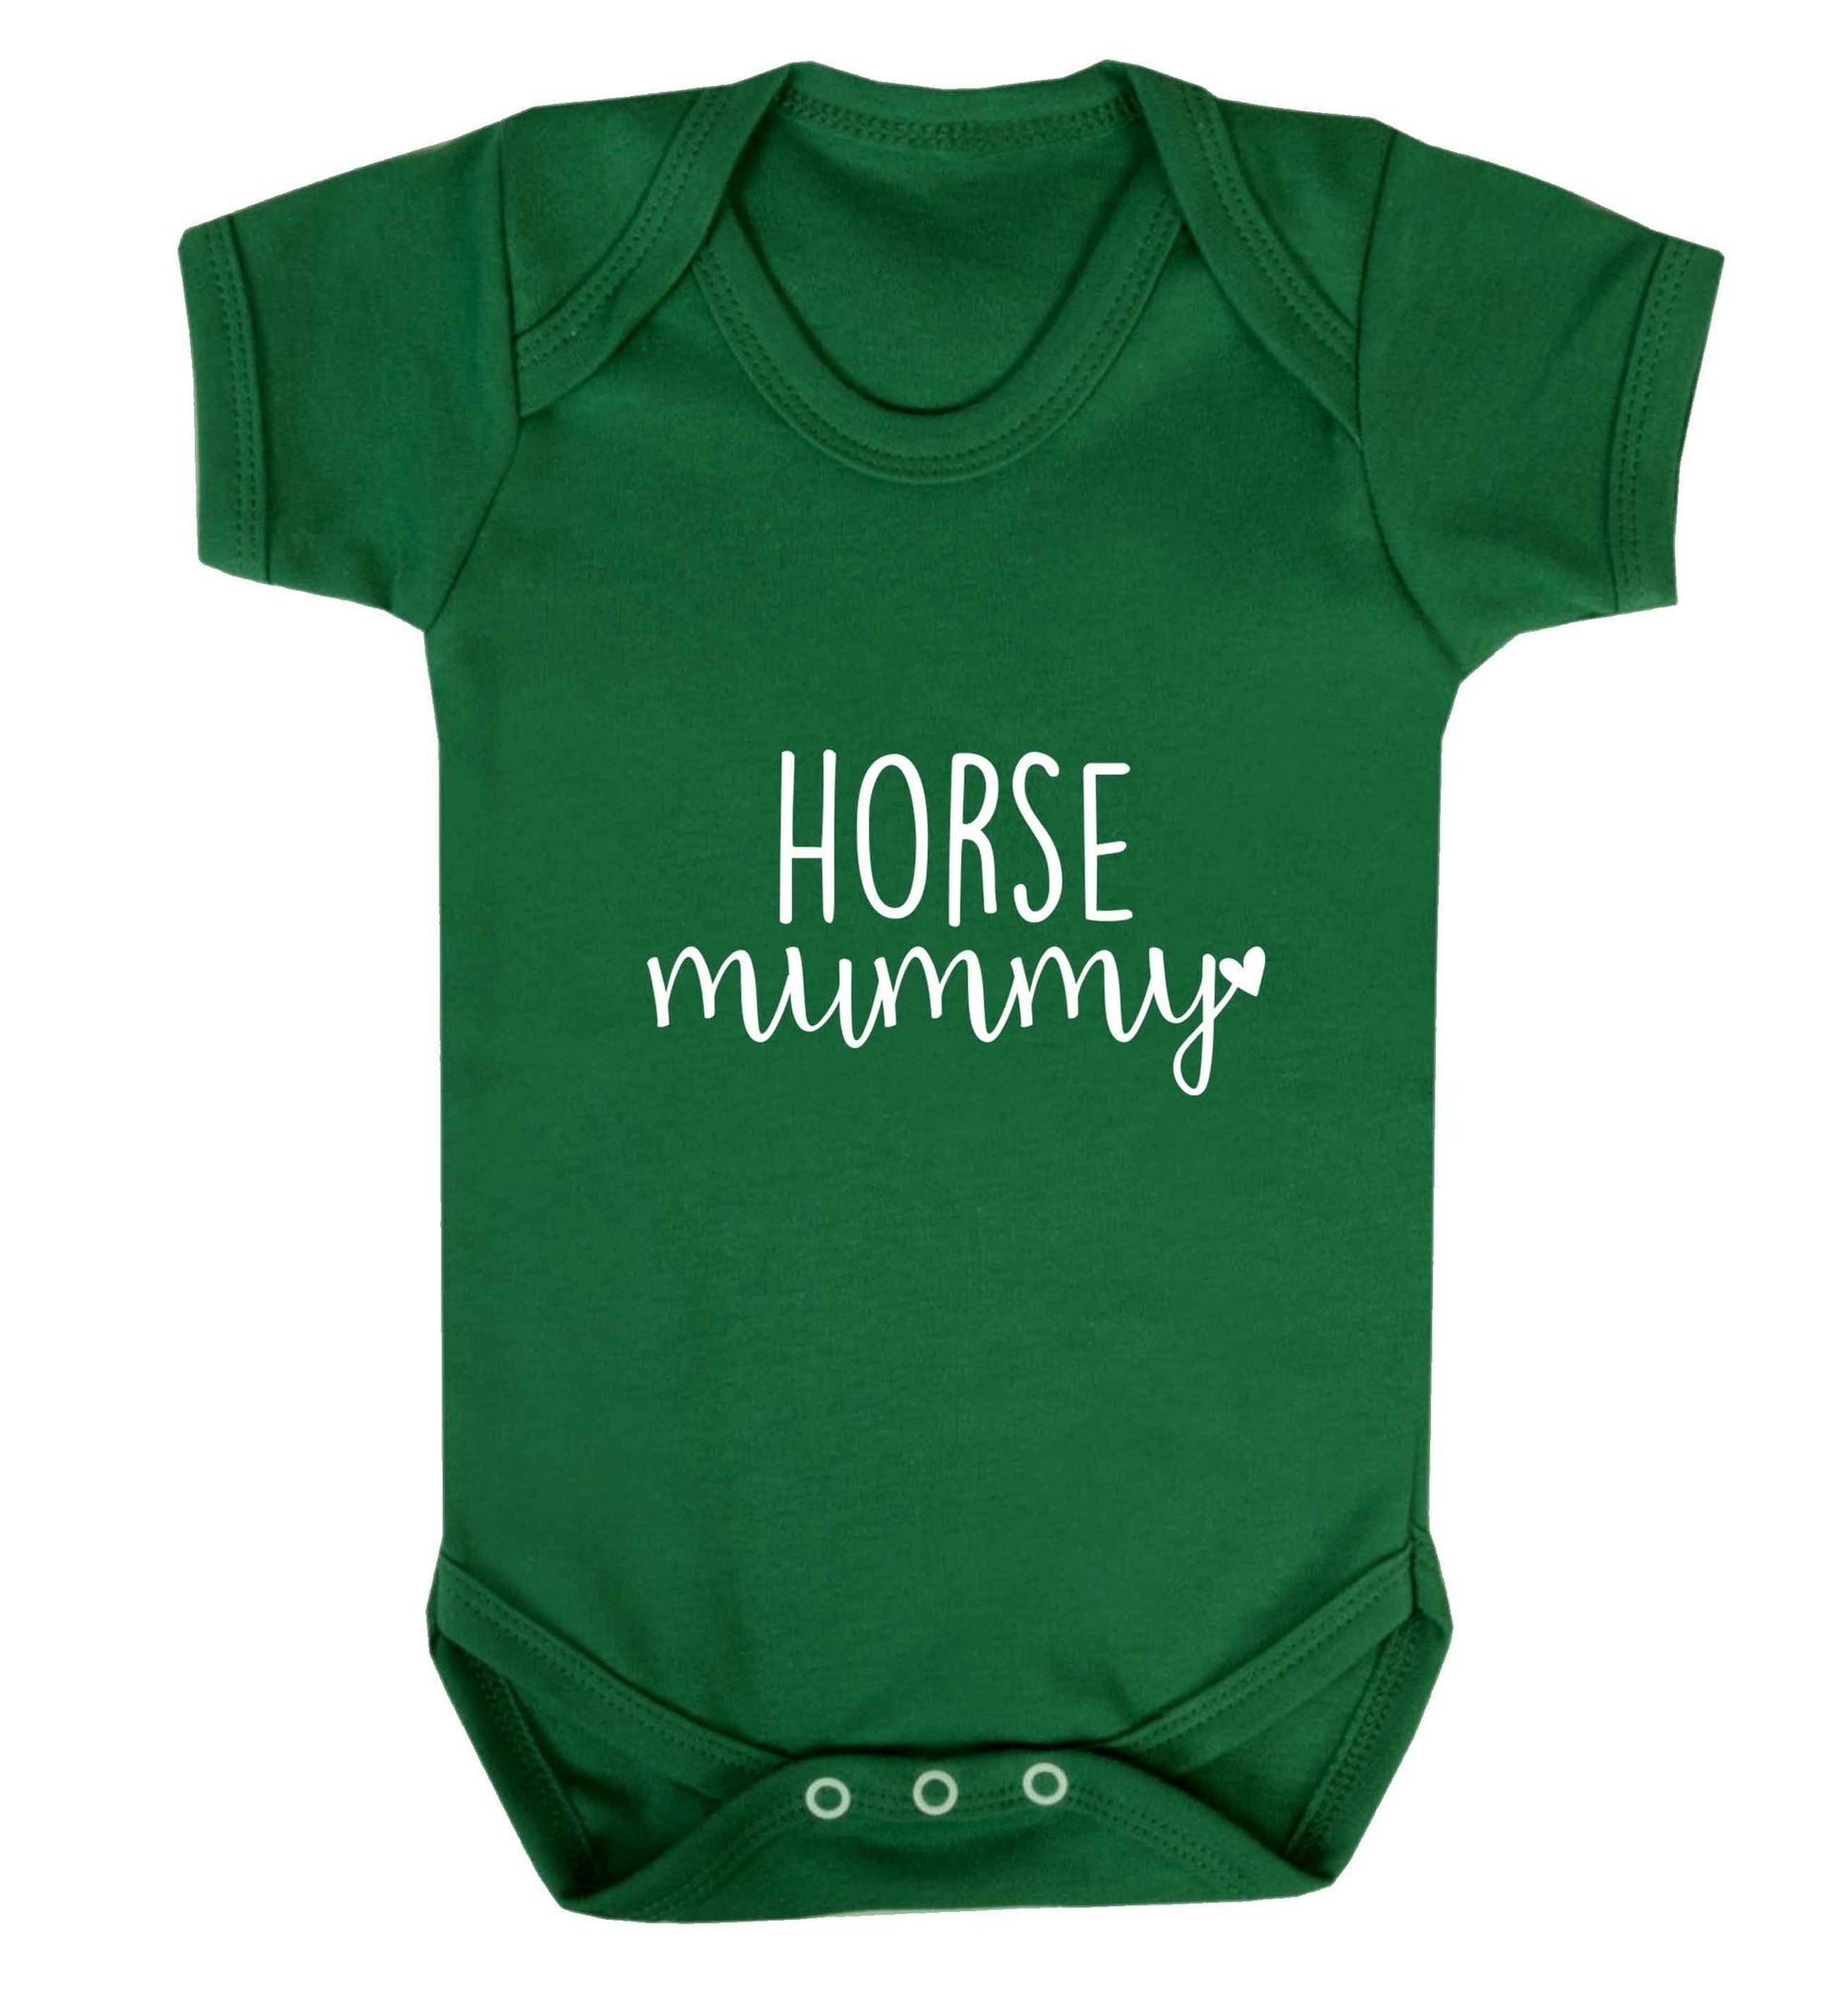 Horse mummy baby vest green 18-24 months